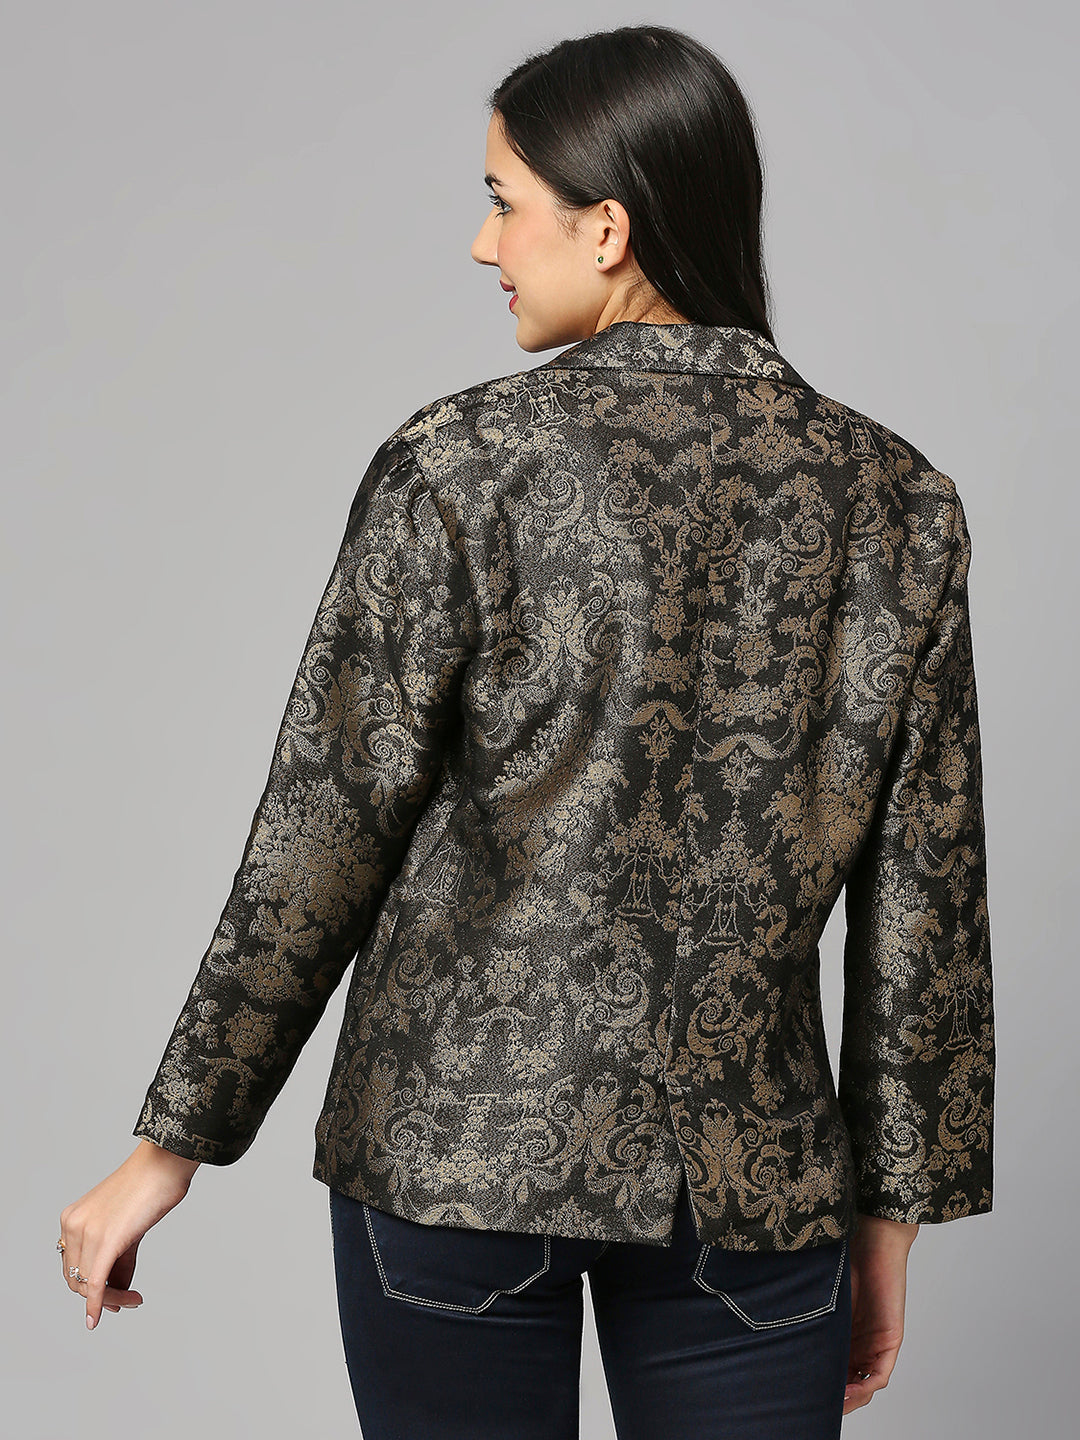 French Patterned Ornamental Black Short Brocade Jacket